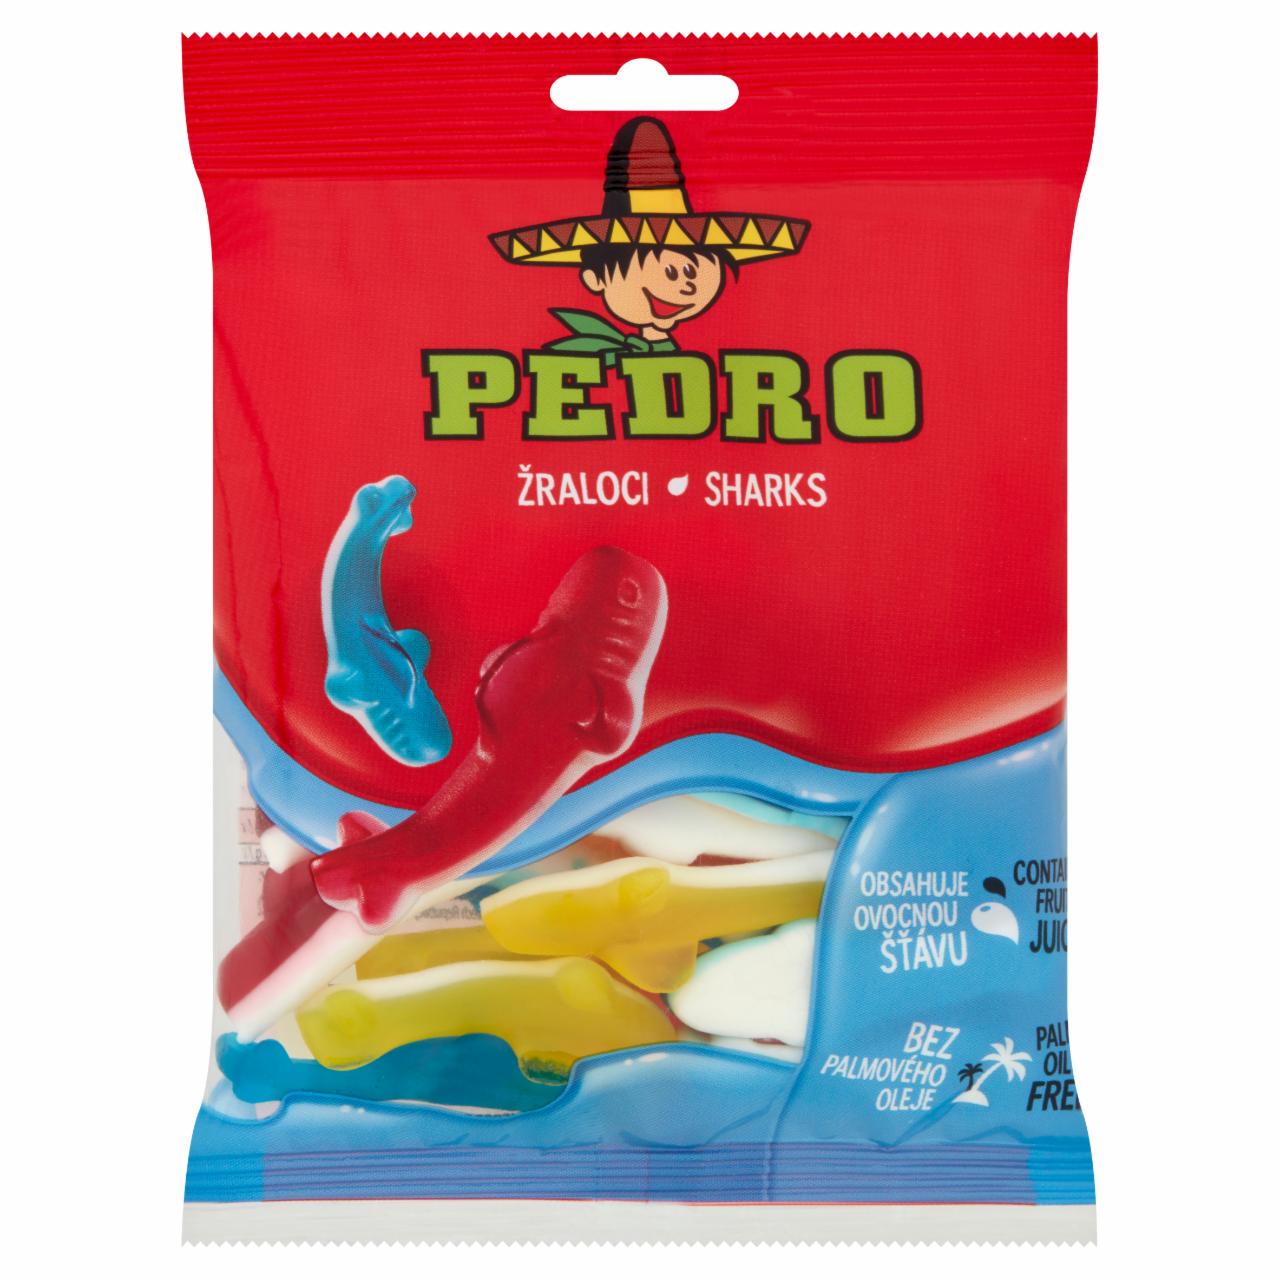 Képek - Pedro Sharks gyümölcsös ízű gumicukor 80 g